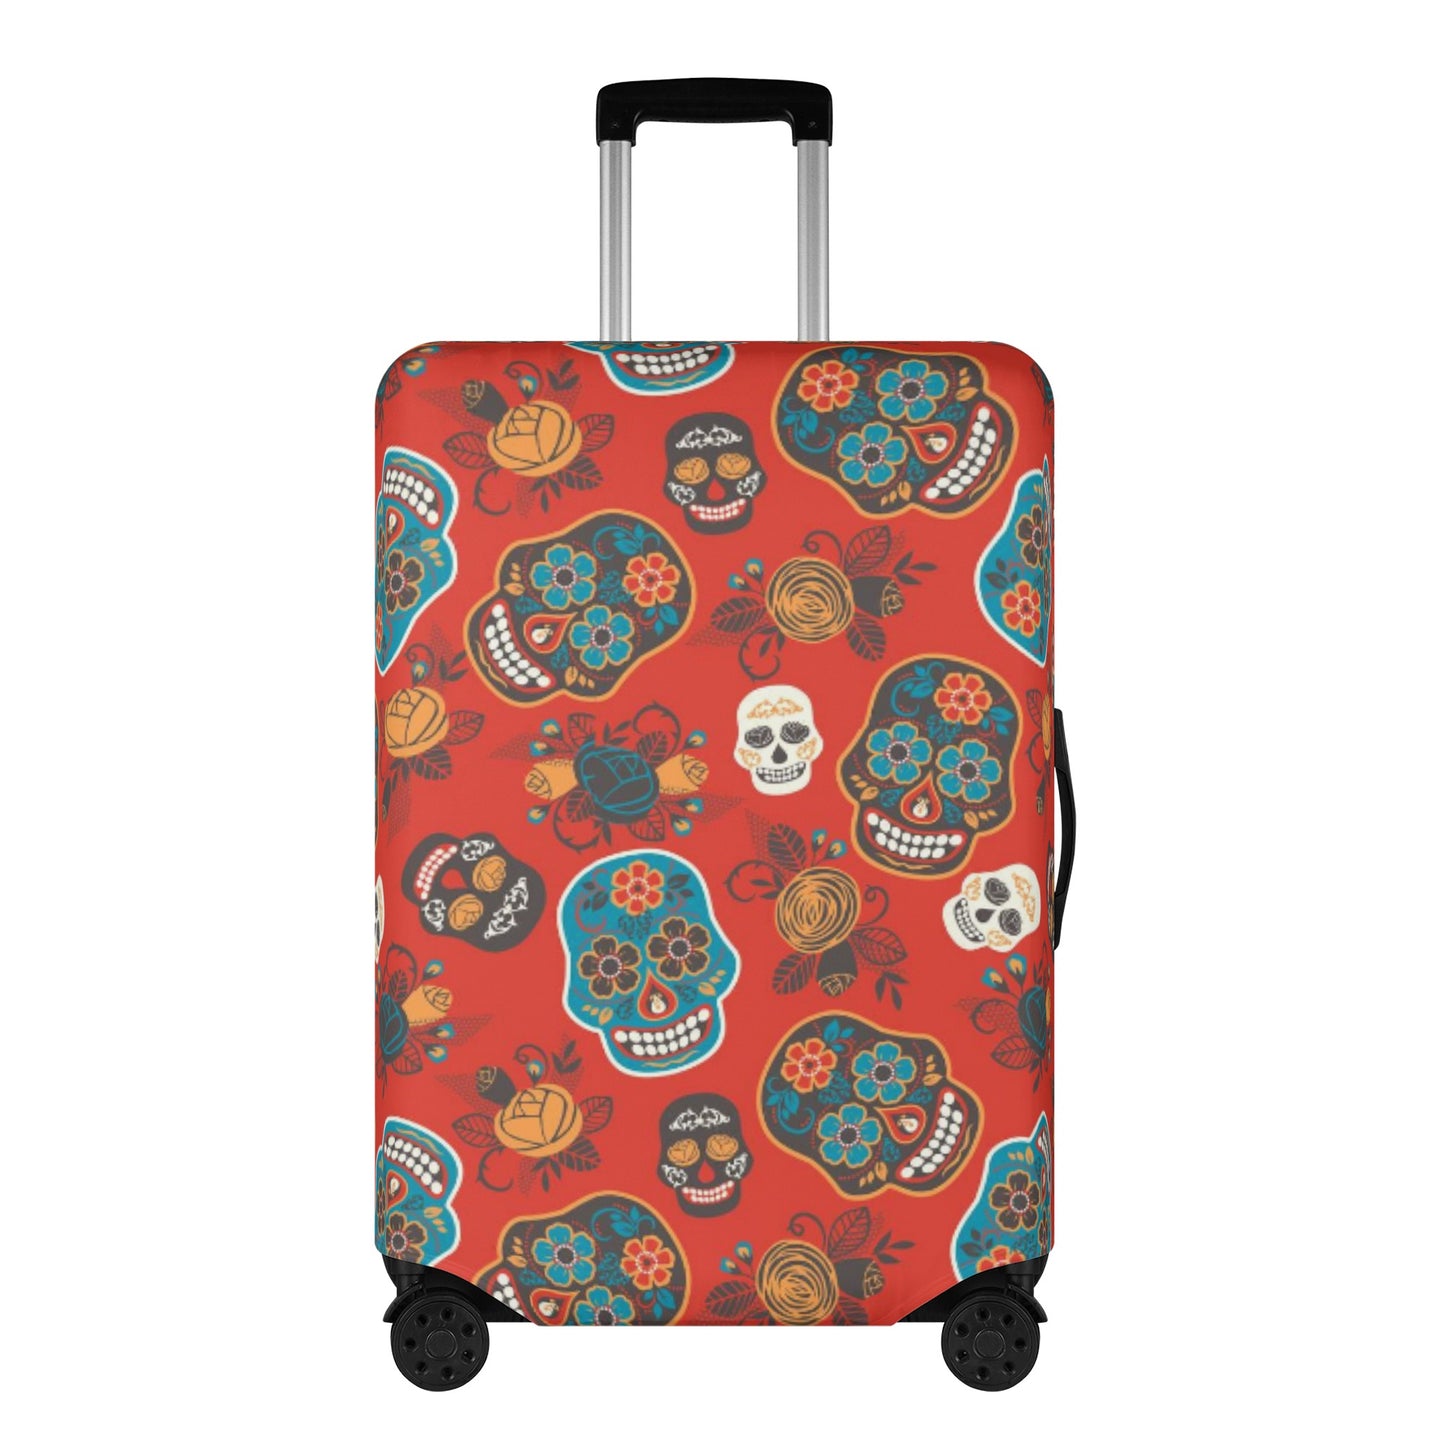 Dia de los muertos suitcase cover Polyester Luggage Cover